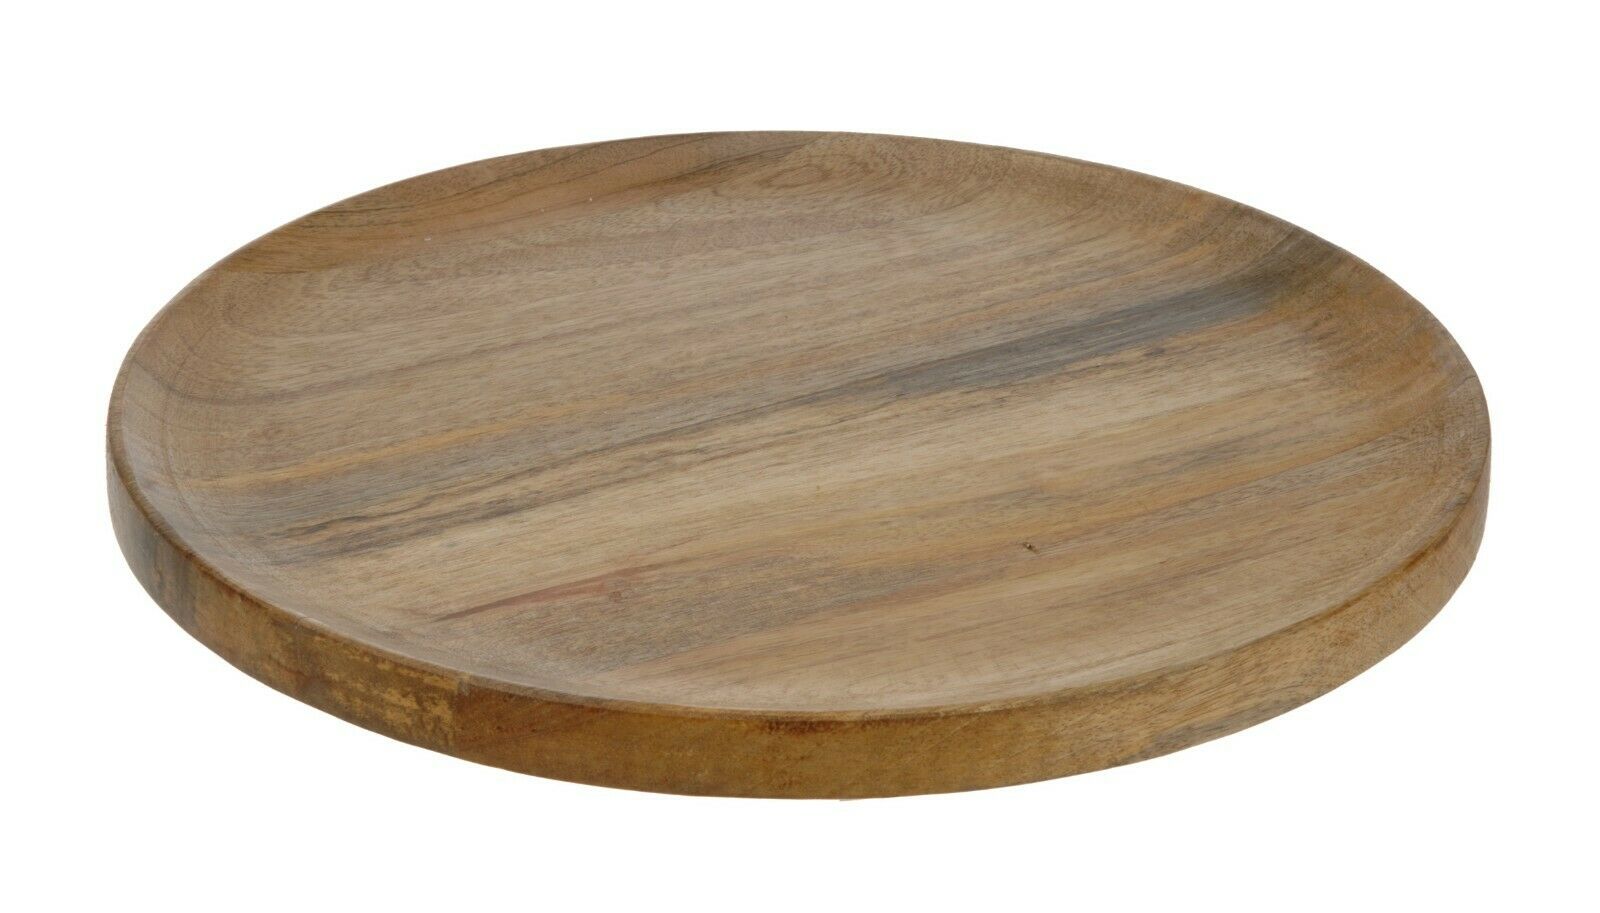 Holz Deko Schale mit Wirbel Muster Tischdeko Teller rund Holzschale Ø 40 cm